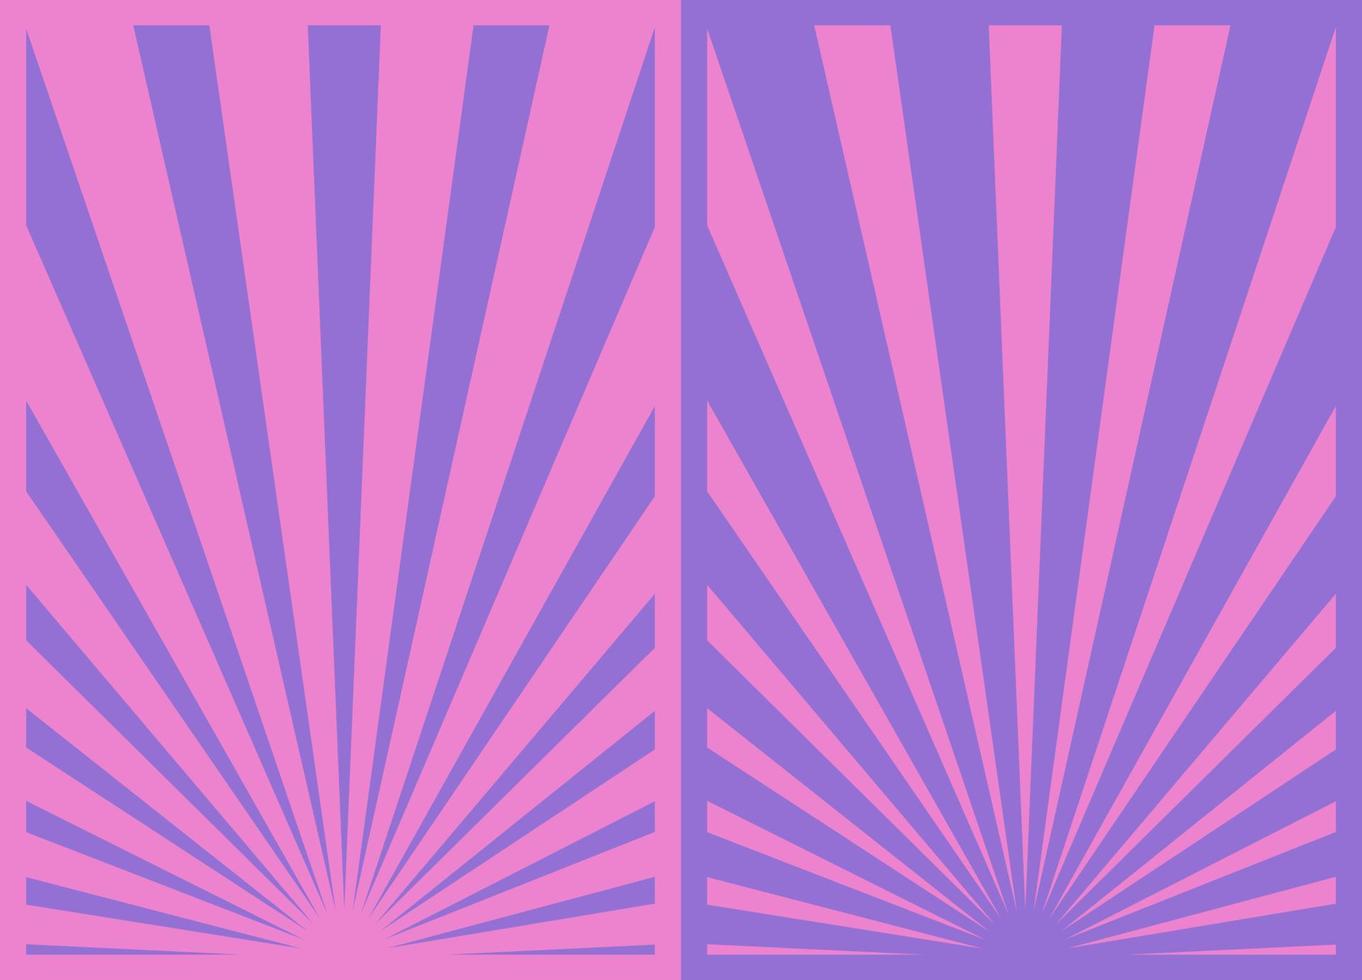 conjunto de afiches de rayas de rayos de sol rosa púrpura vintage, plantilla con rayos centrados en la parte inferior. carteles verticales de dibujos animados de inspiración retro. vector